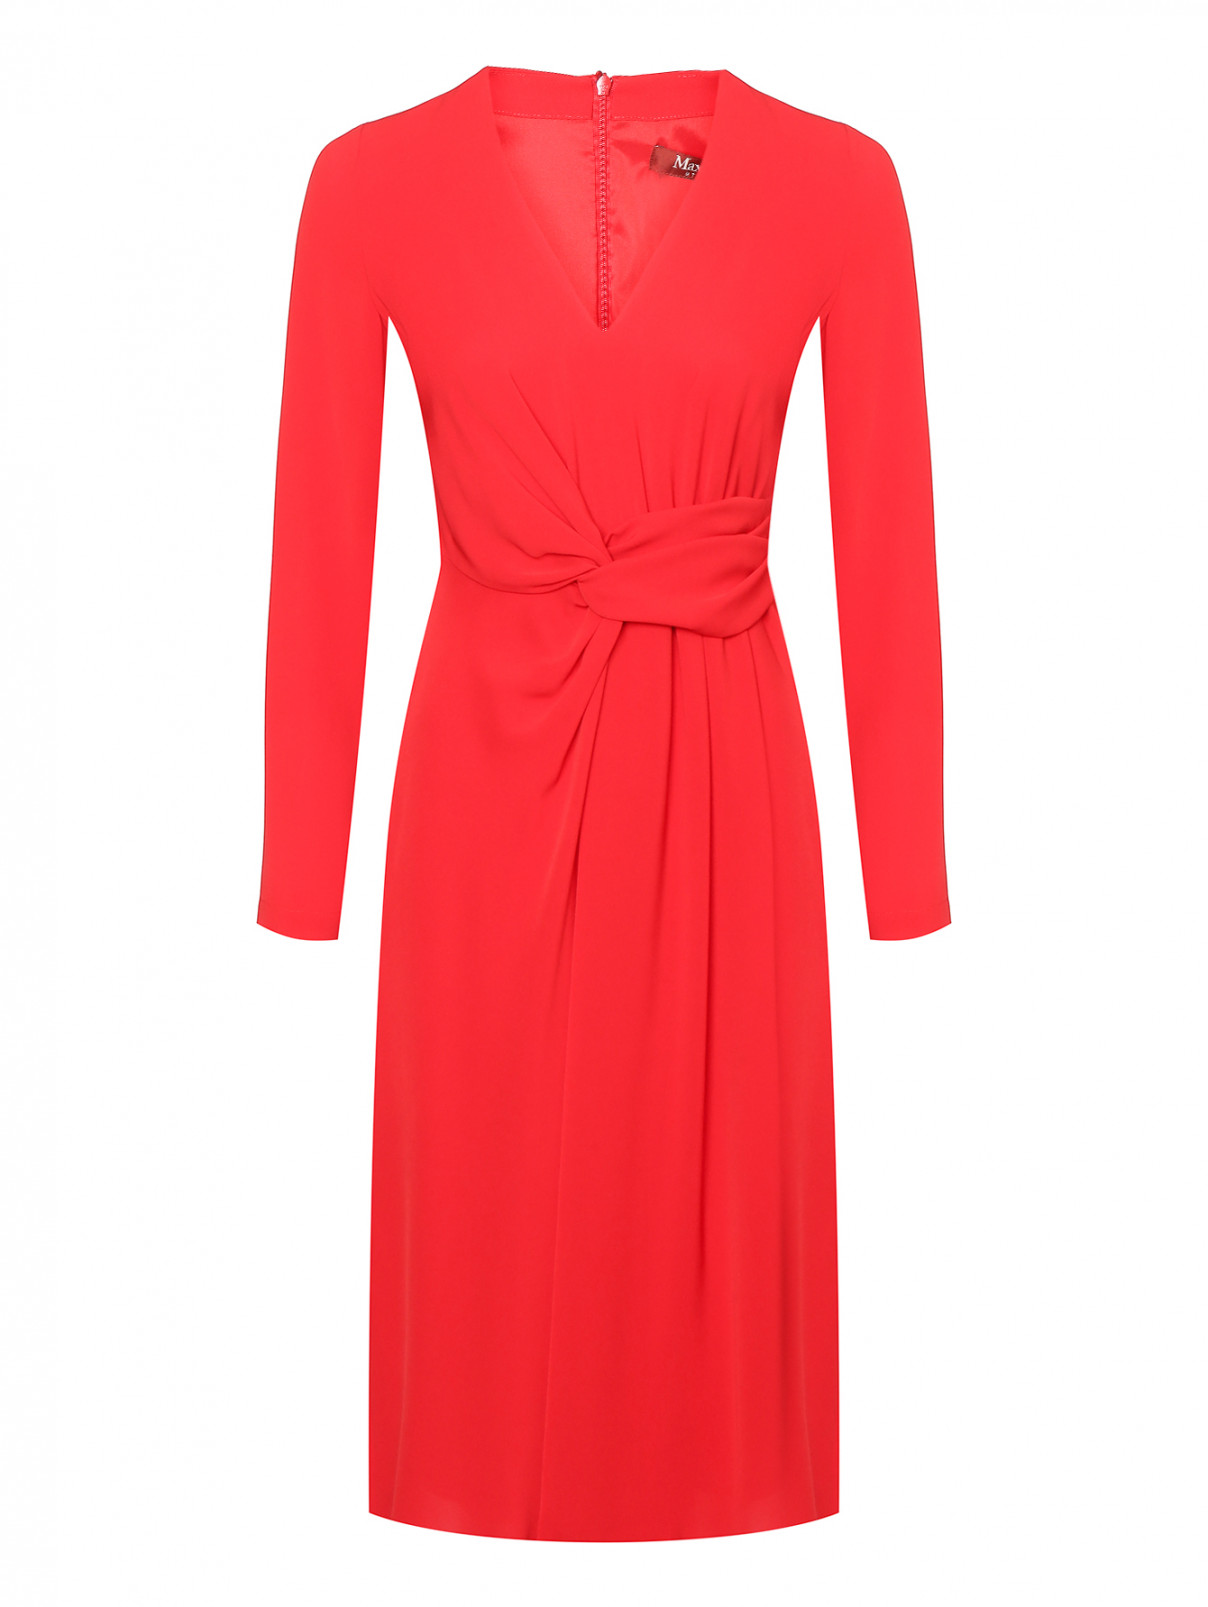 Платье-миди с V-образным вырезом и декоративным элементом Max Mara  –  Общий вид  – Цвет:  Красный